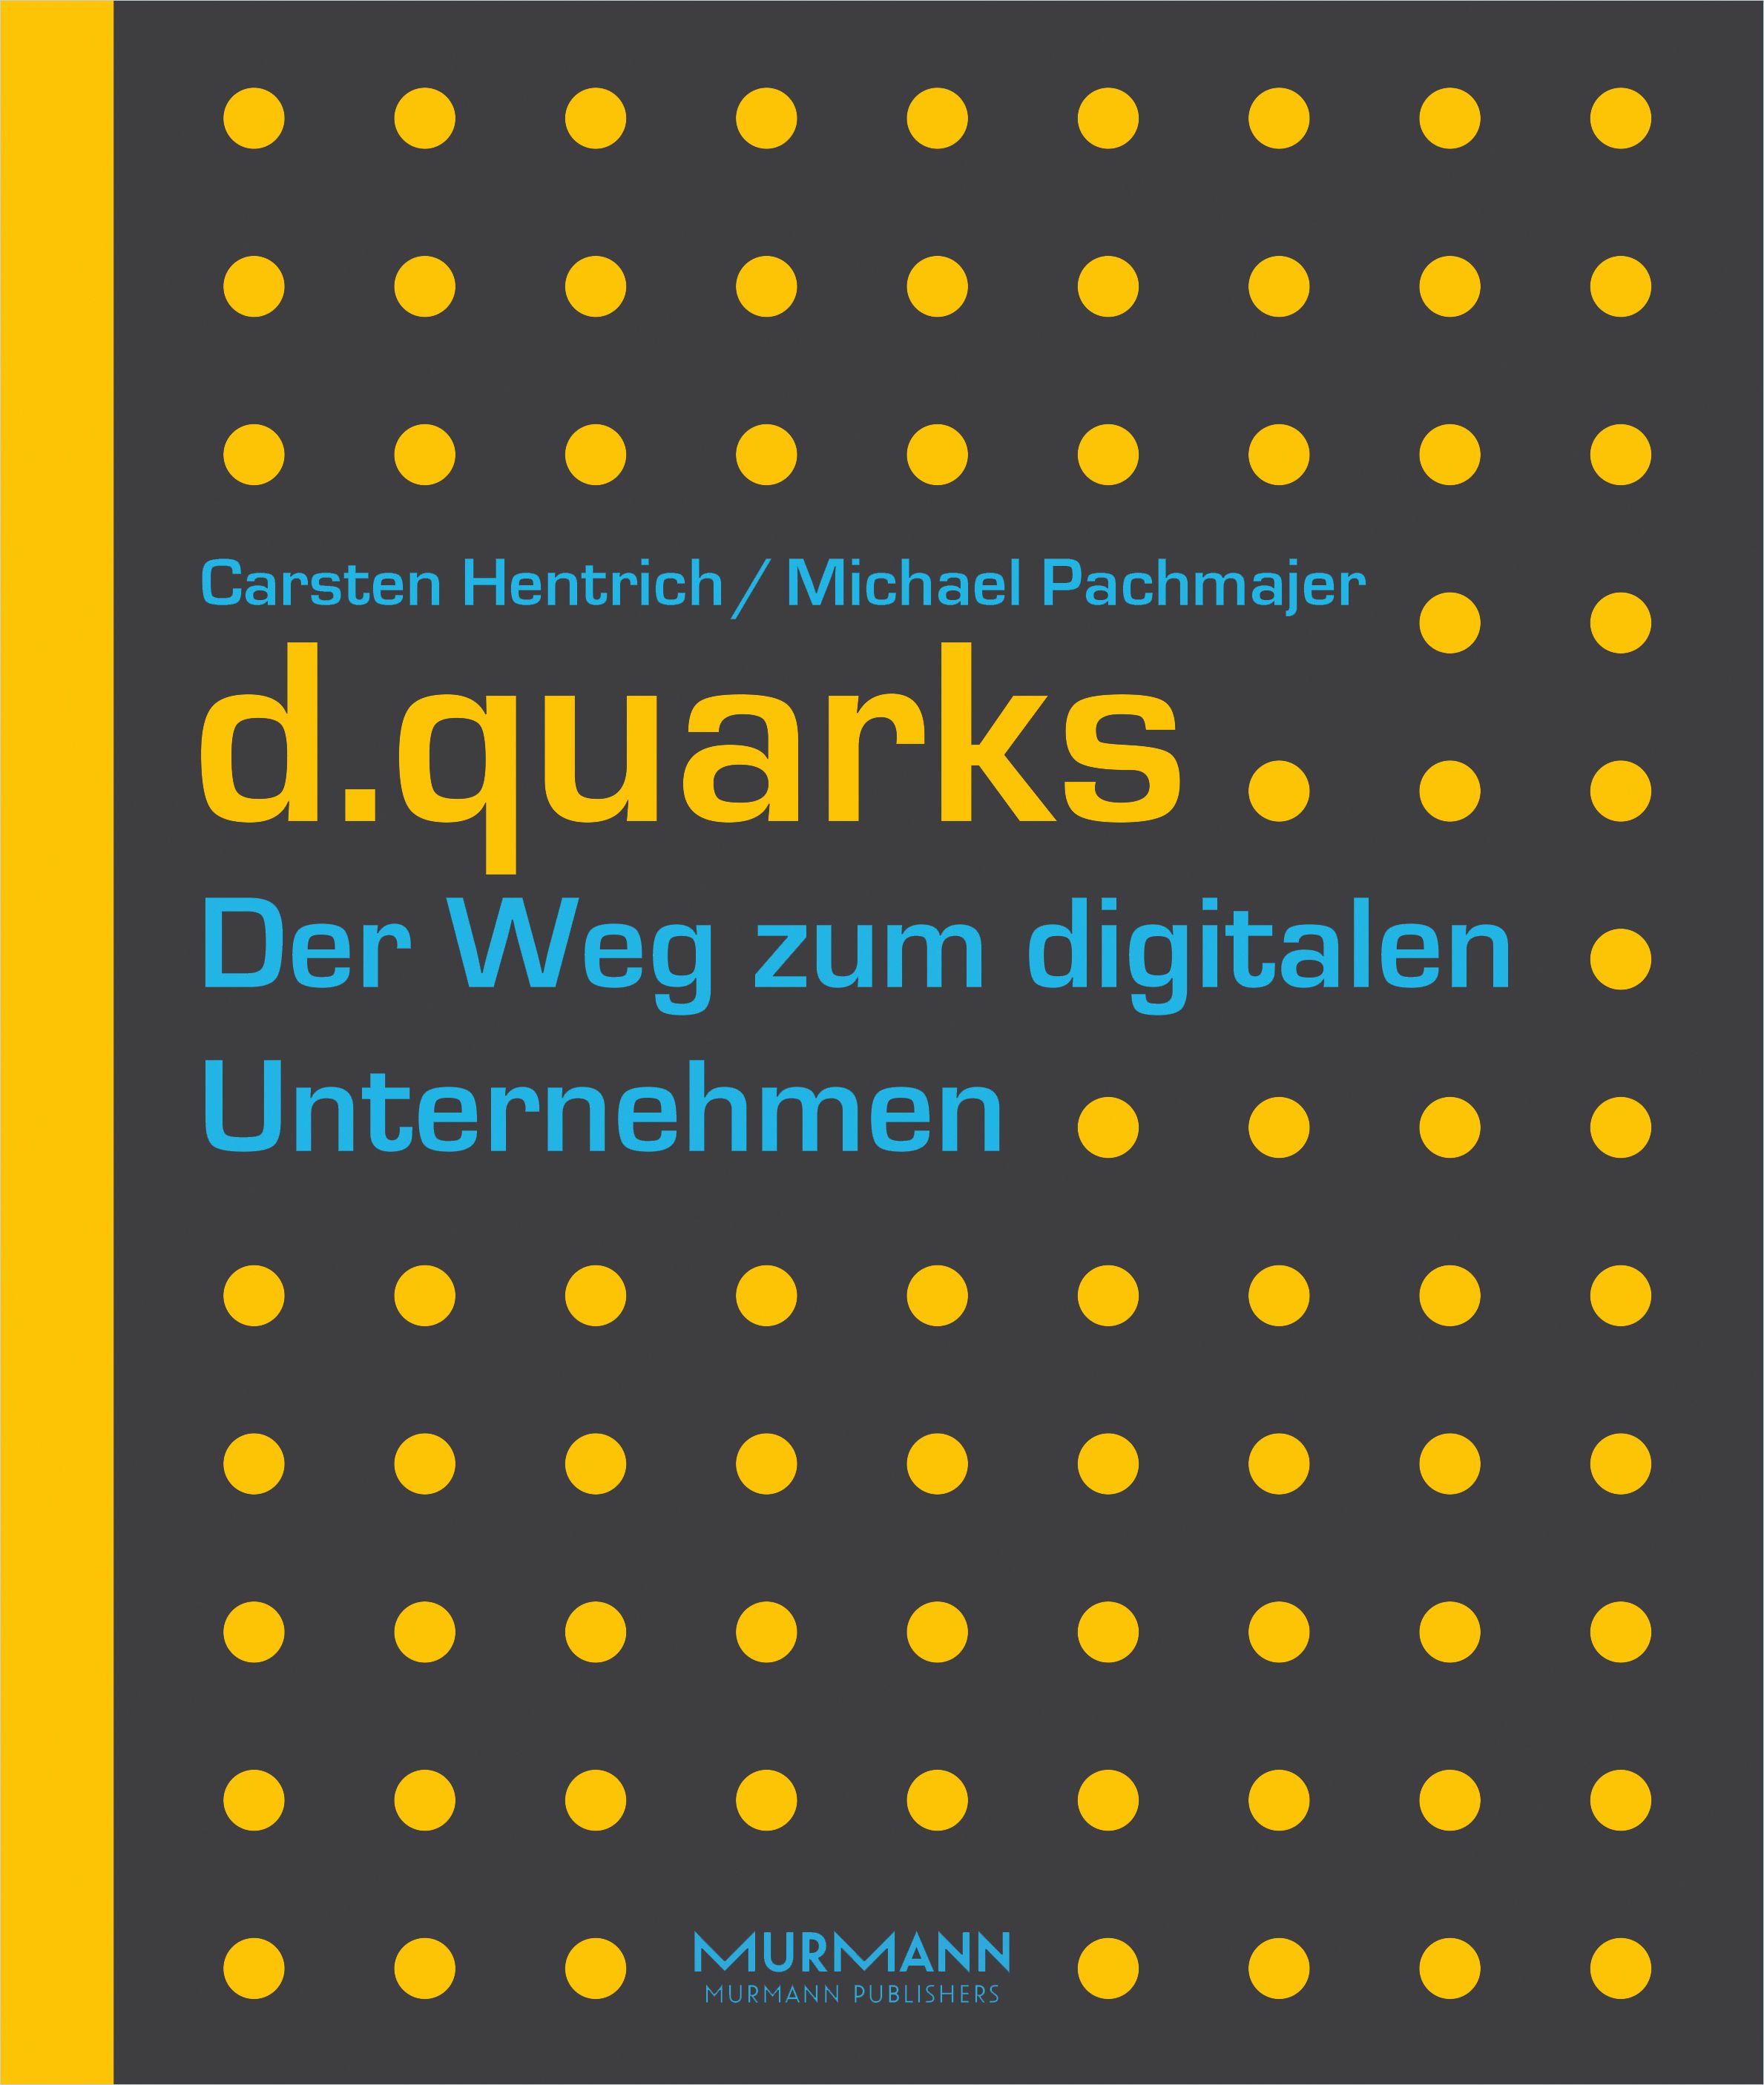 Image of: d.quarks